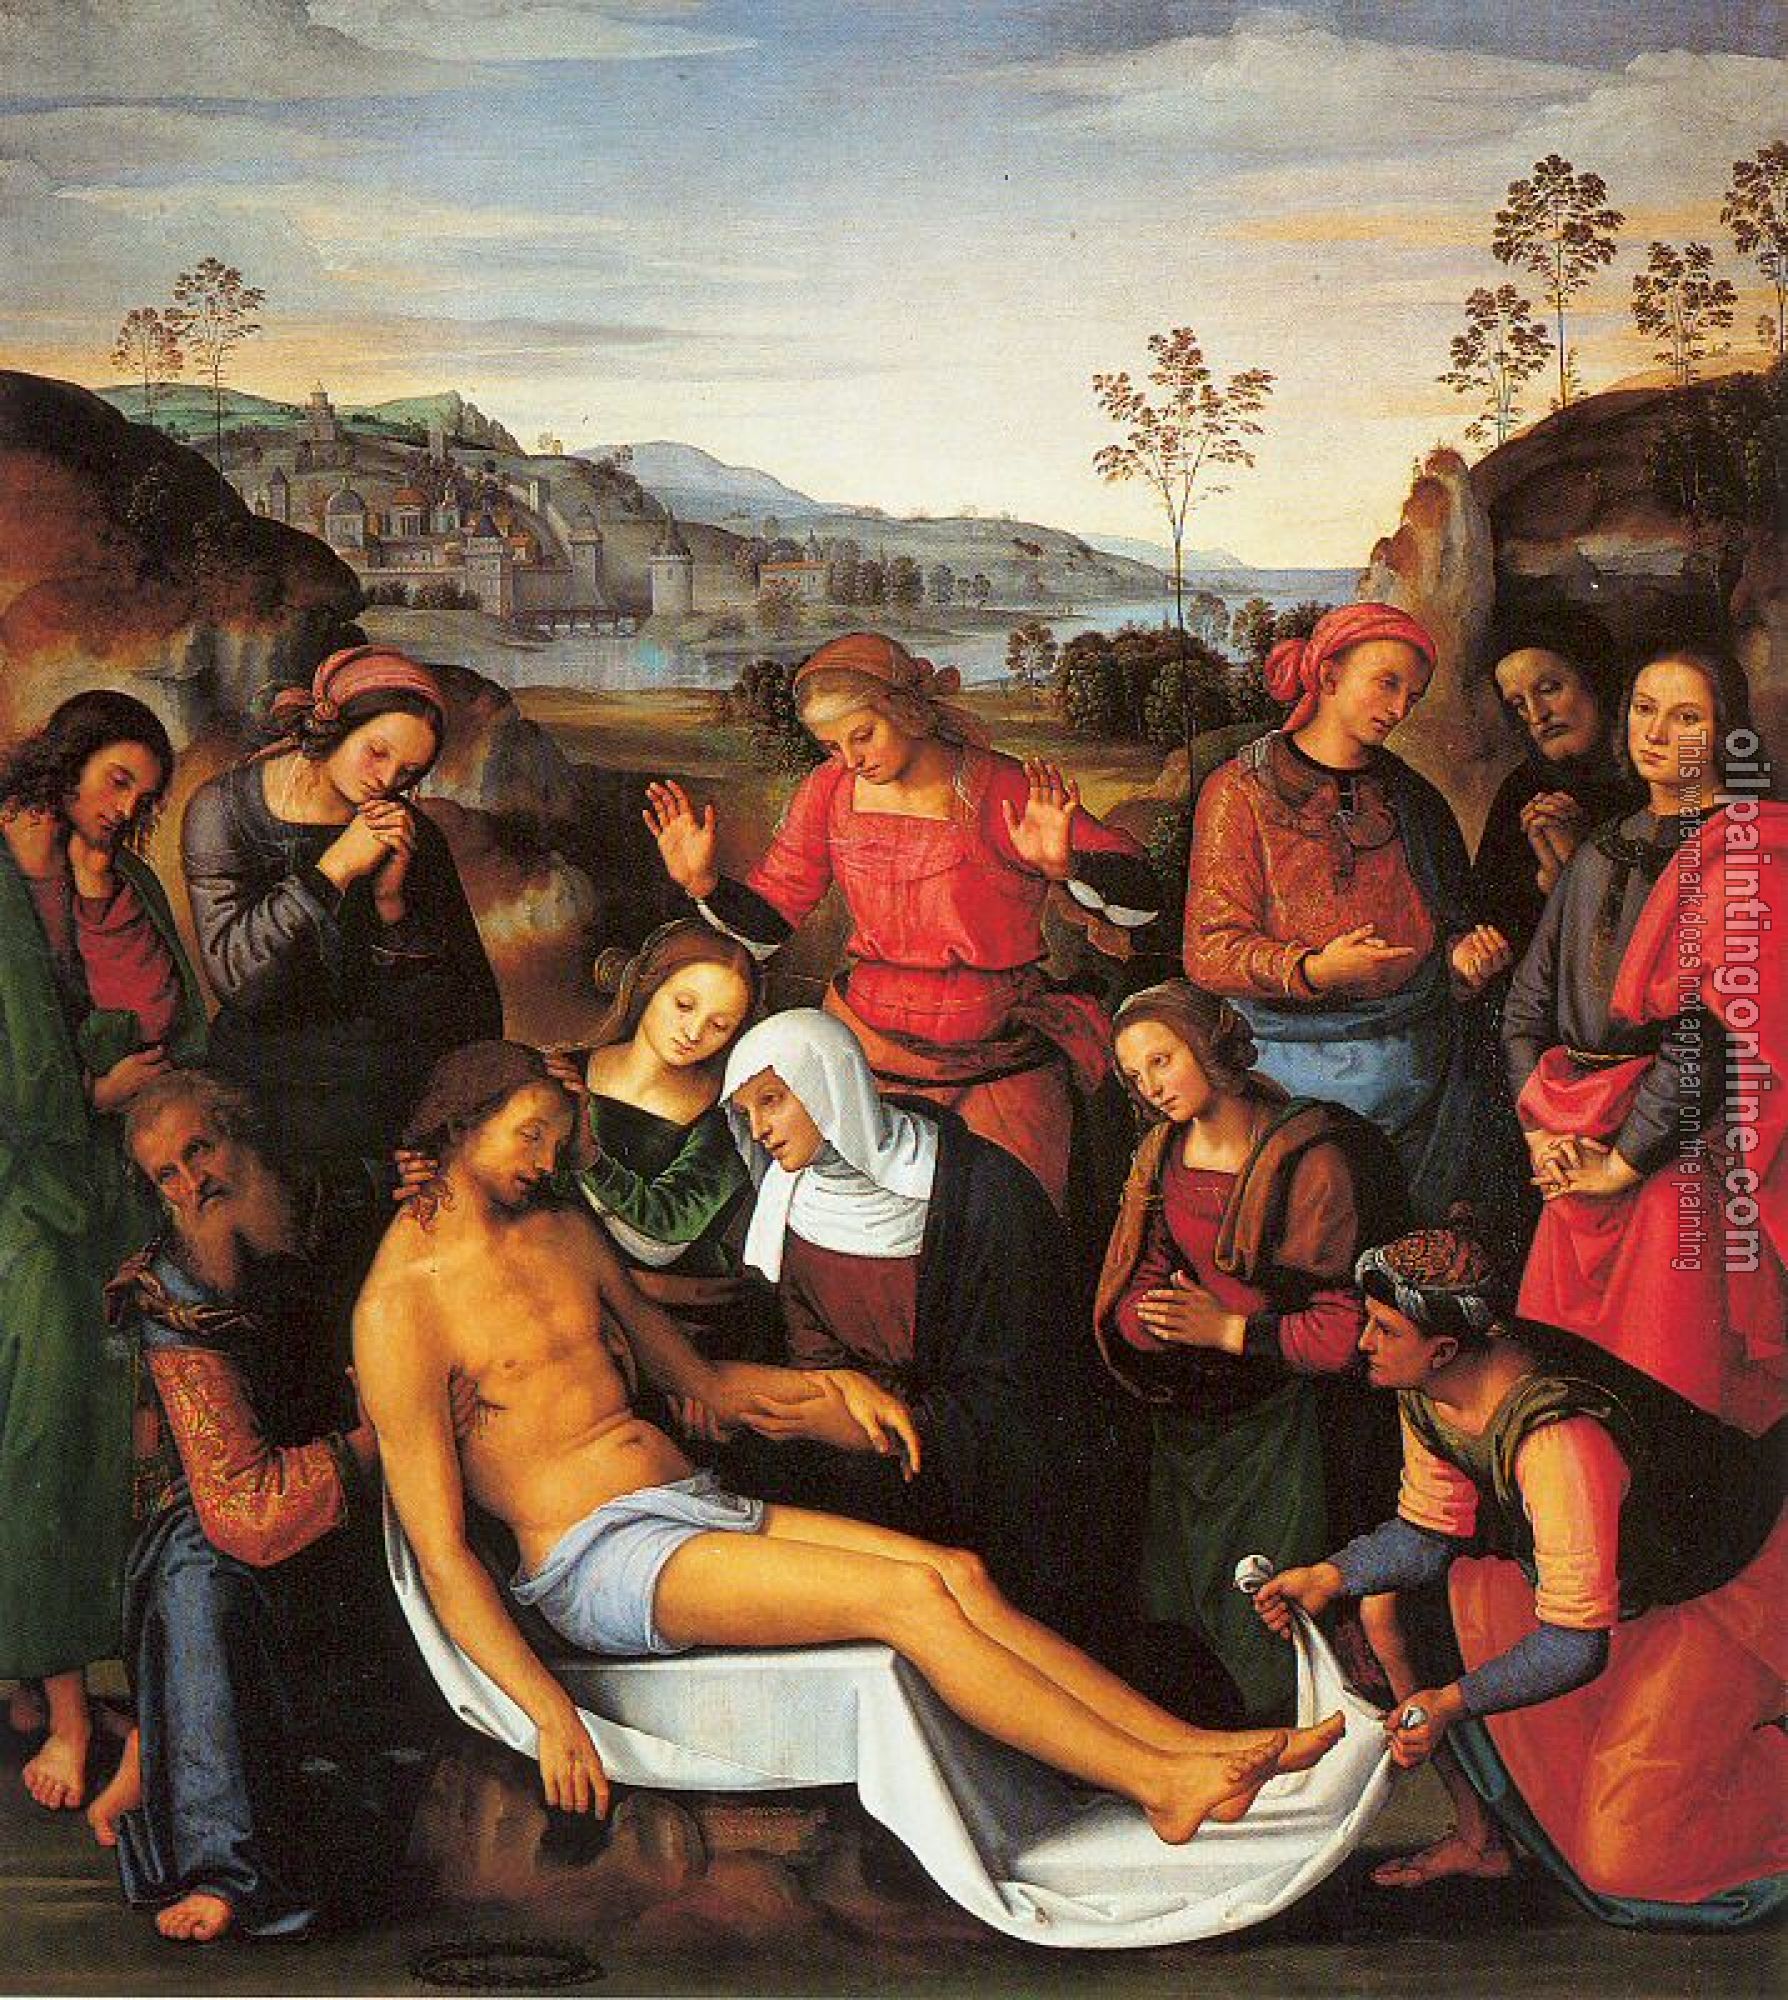 Perugino, Pietro - The Lamentation over the Dead Christ